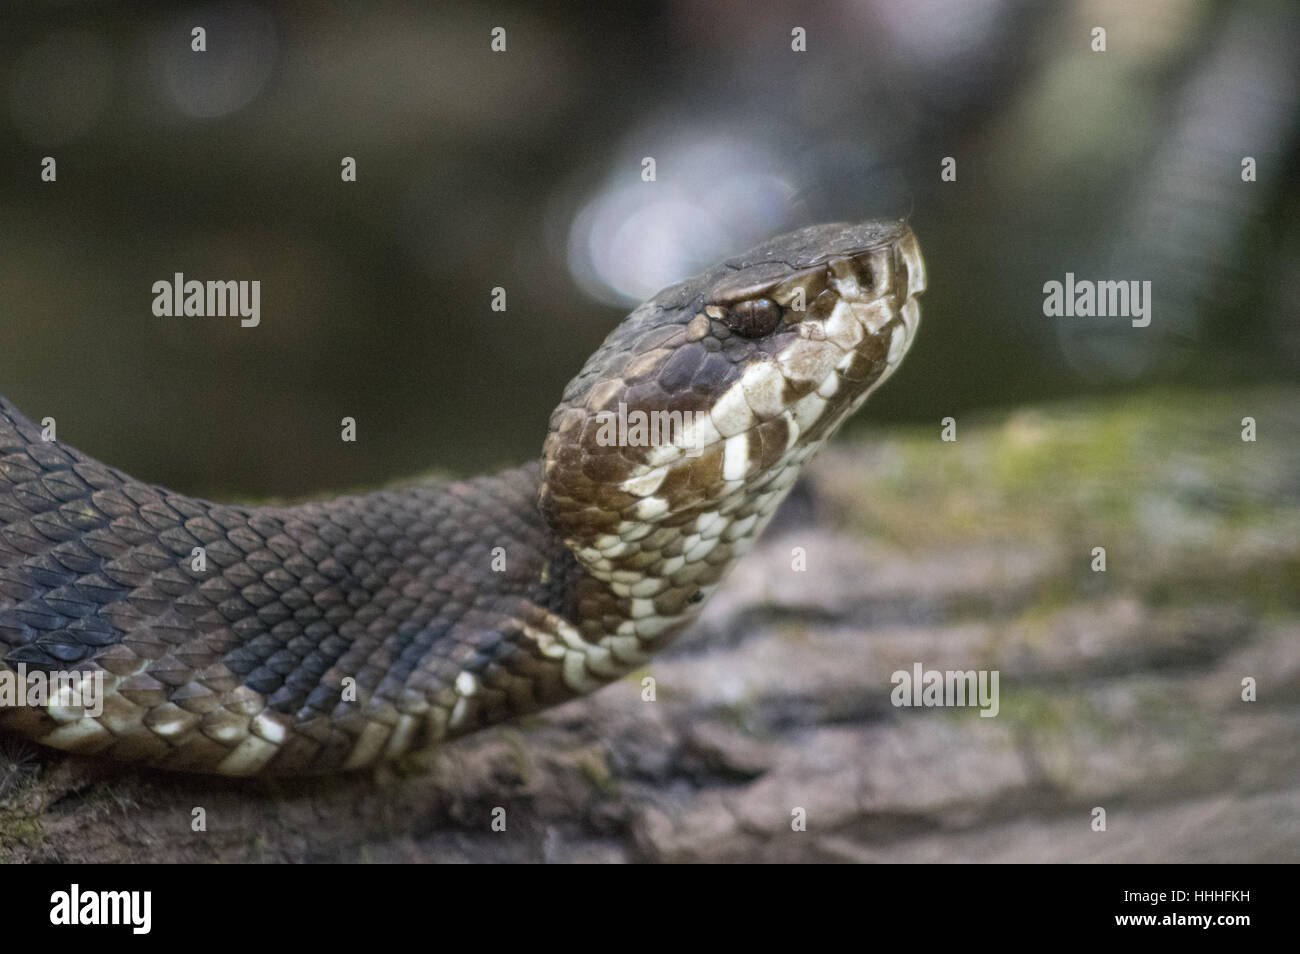 Chiudere fino a bassa angolazione della testa del serpente cottonmouth, aka acqua mocassino, un infame rattlesnakes nel sud-ovest della Florida. Foto Stock